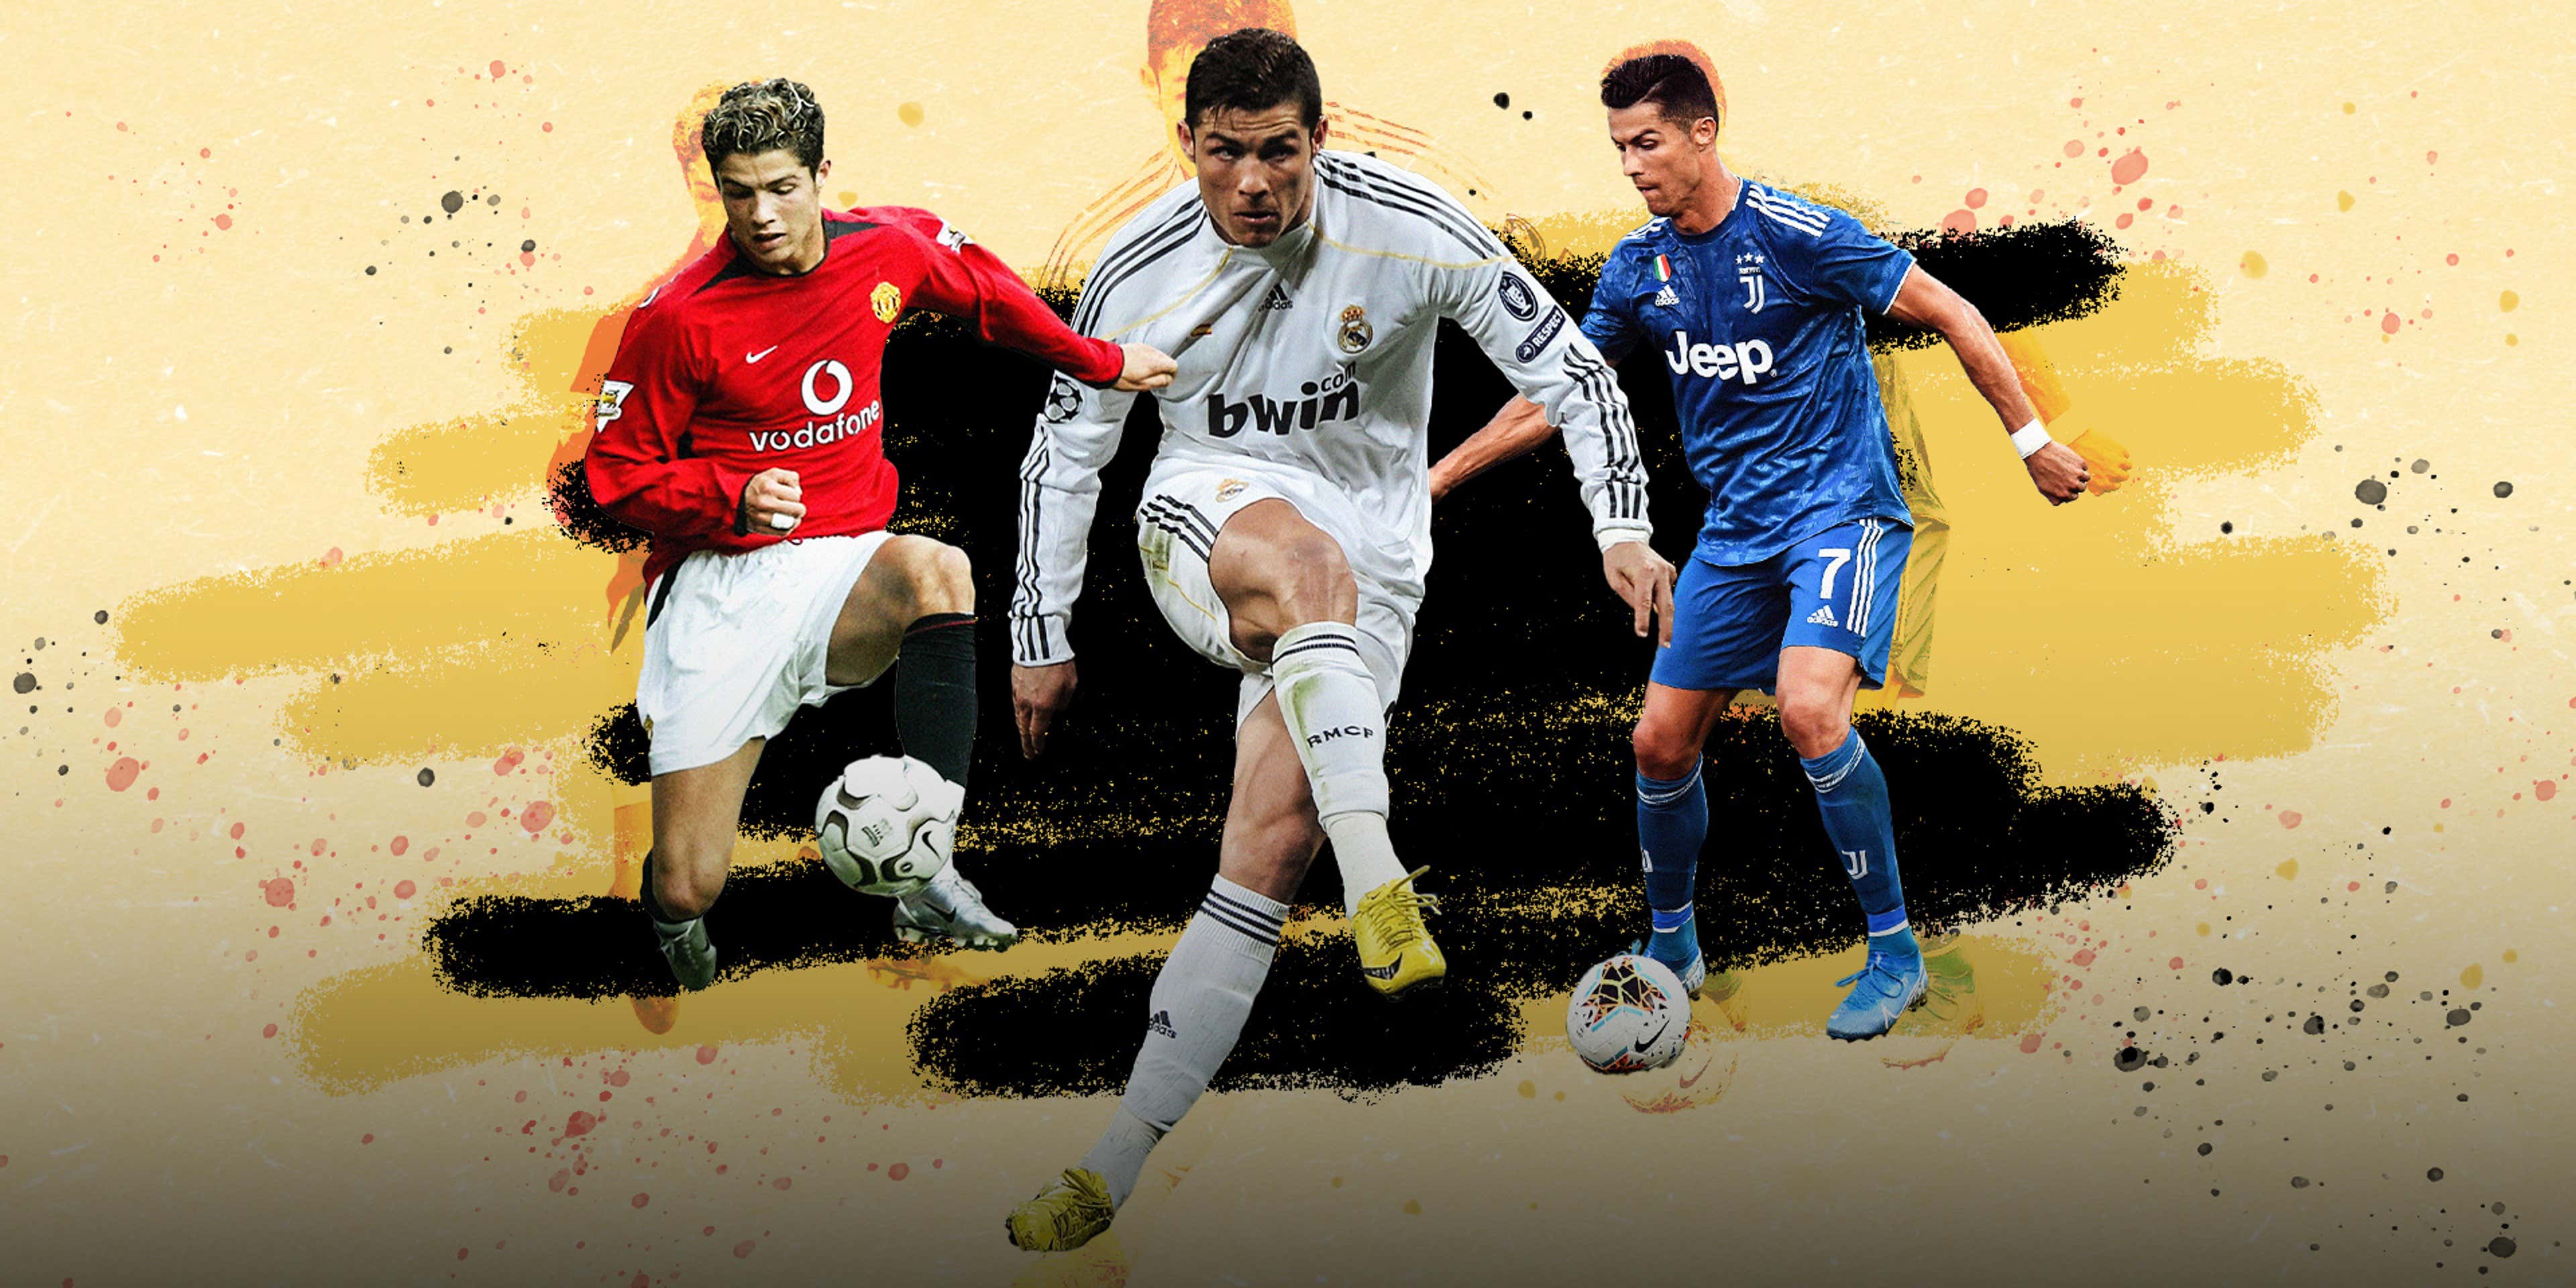 La historia de amor de Cristiano Ronaldo y sus Nike Mercurial | Argentina